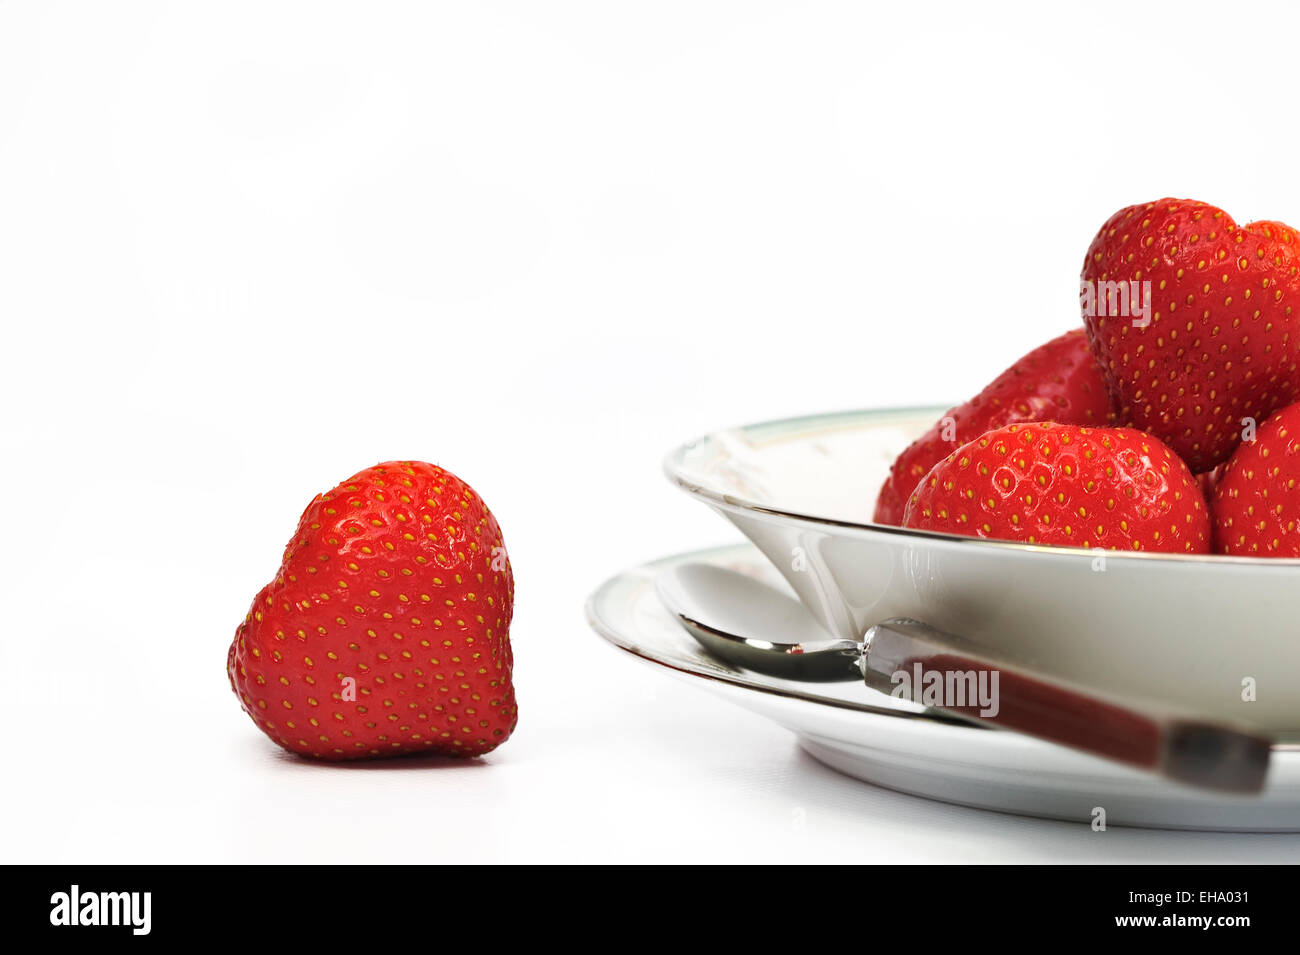 Bowl of fresh strawberries Stock Photo